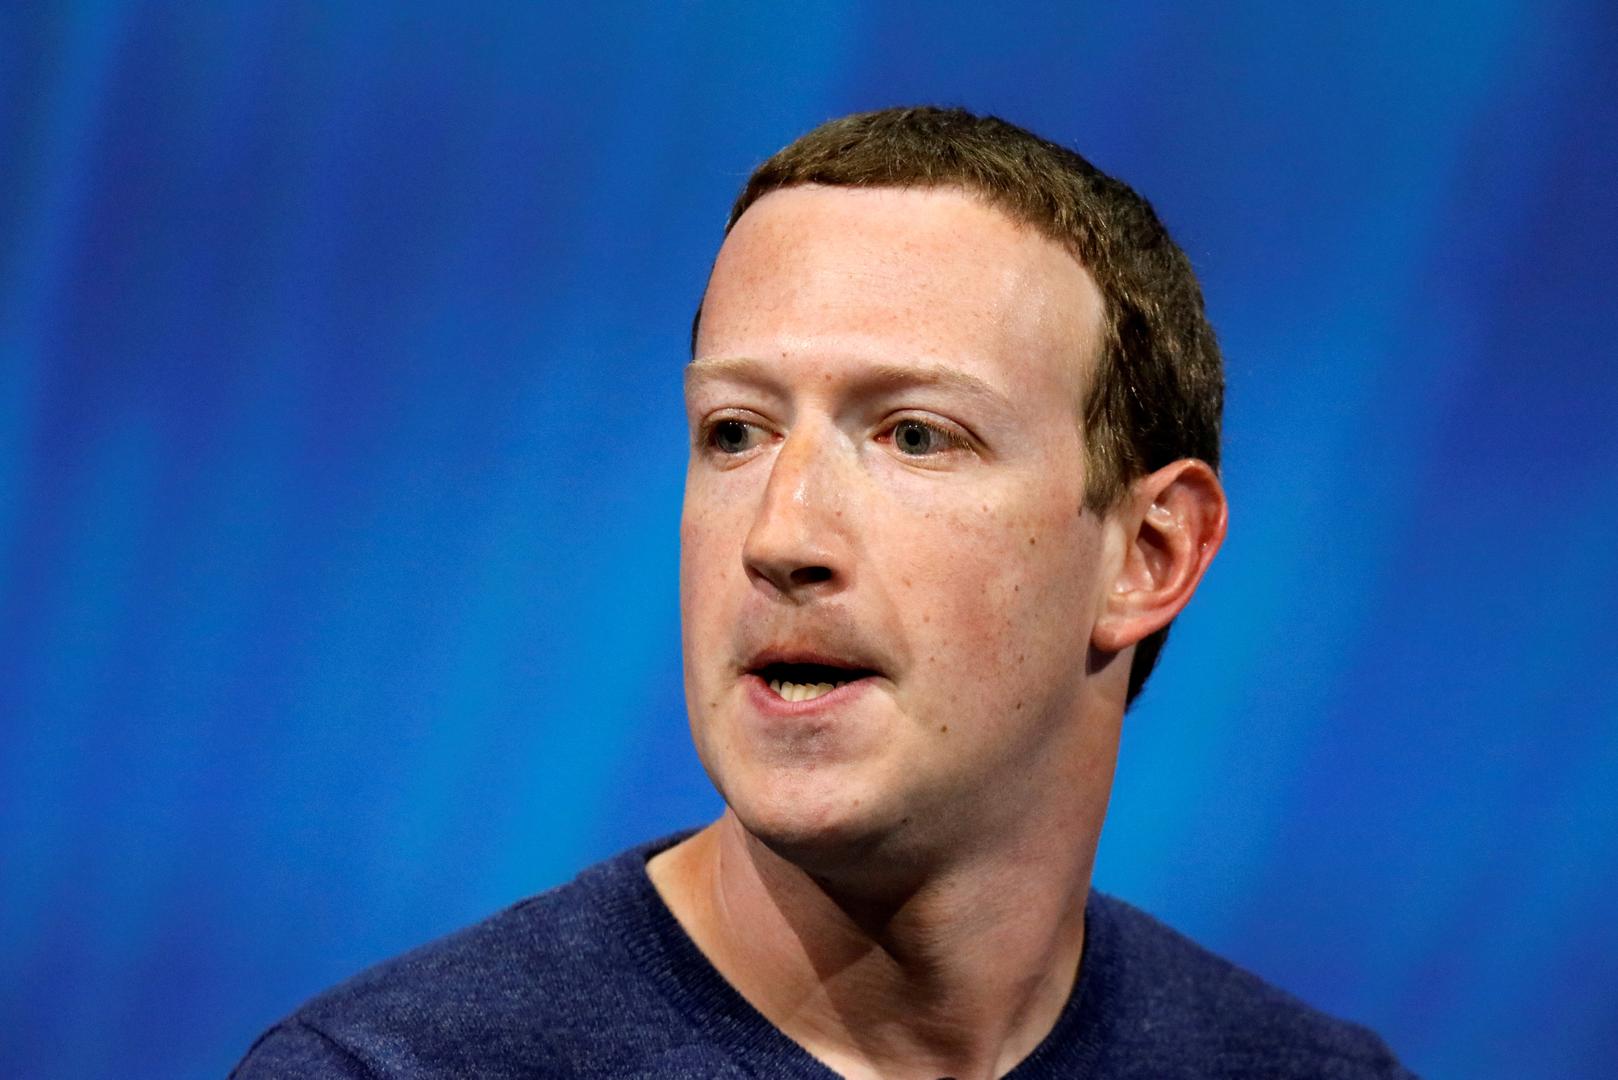 Facebookova mreža gubi posjećenost, no druge aplikacije u njegovu vlasništvu – Instagram, WhatsApp... – rastu